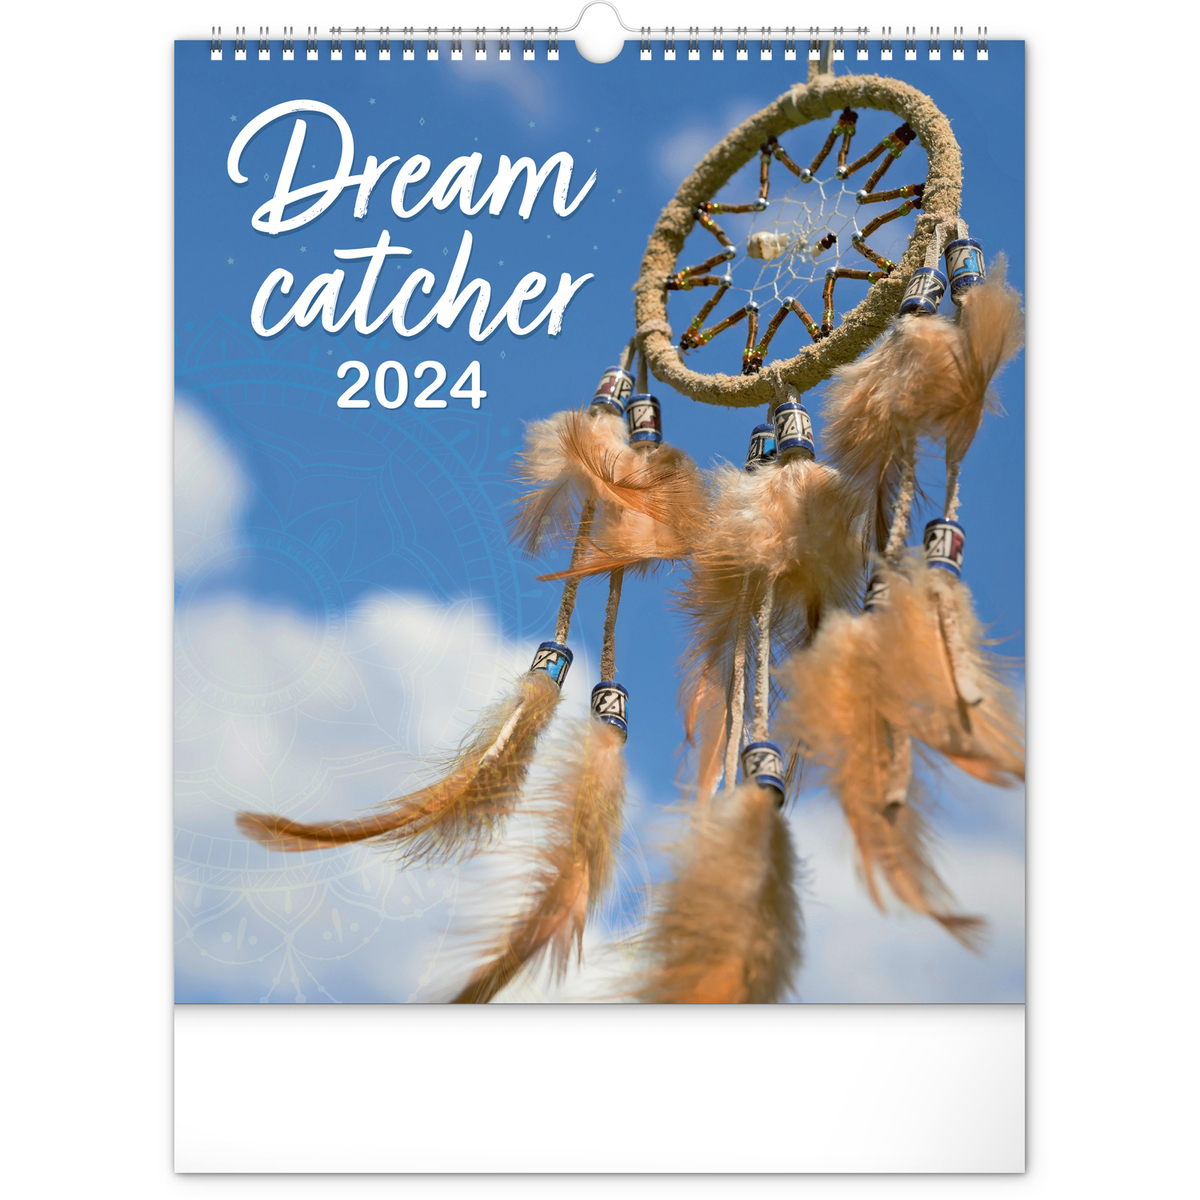 Dream Catcher, képes falinaptár 2024